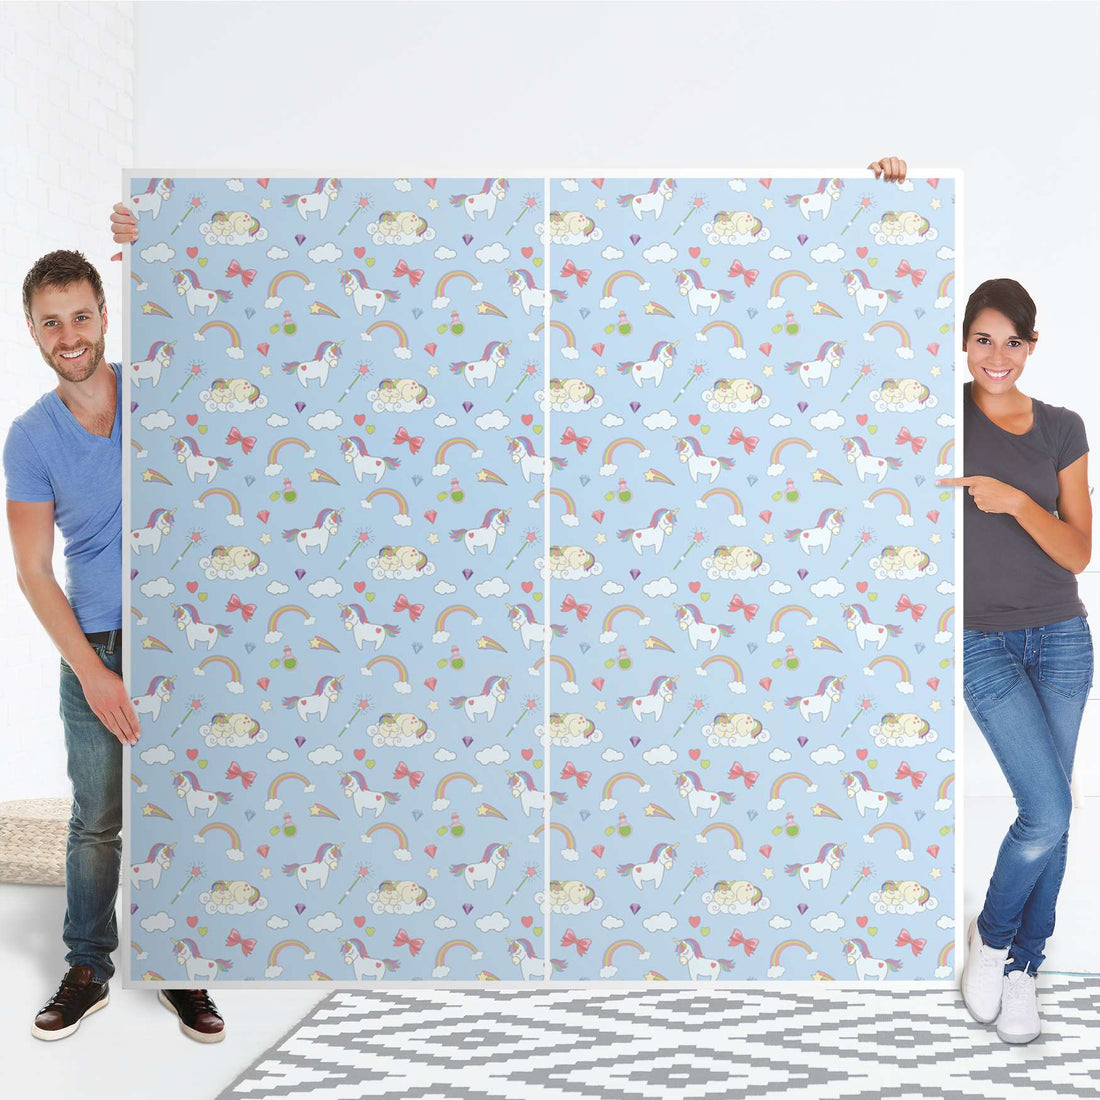 Möbel Klebefolie Rainbow Unicorn - IKEA Pax Schrank 201 cm Höhe - Schiebetür - Folie